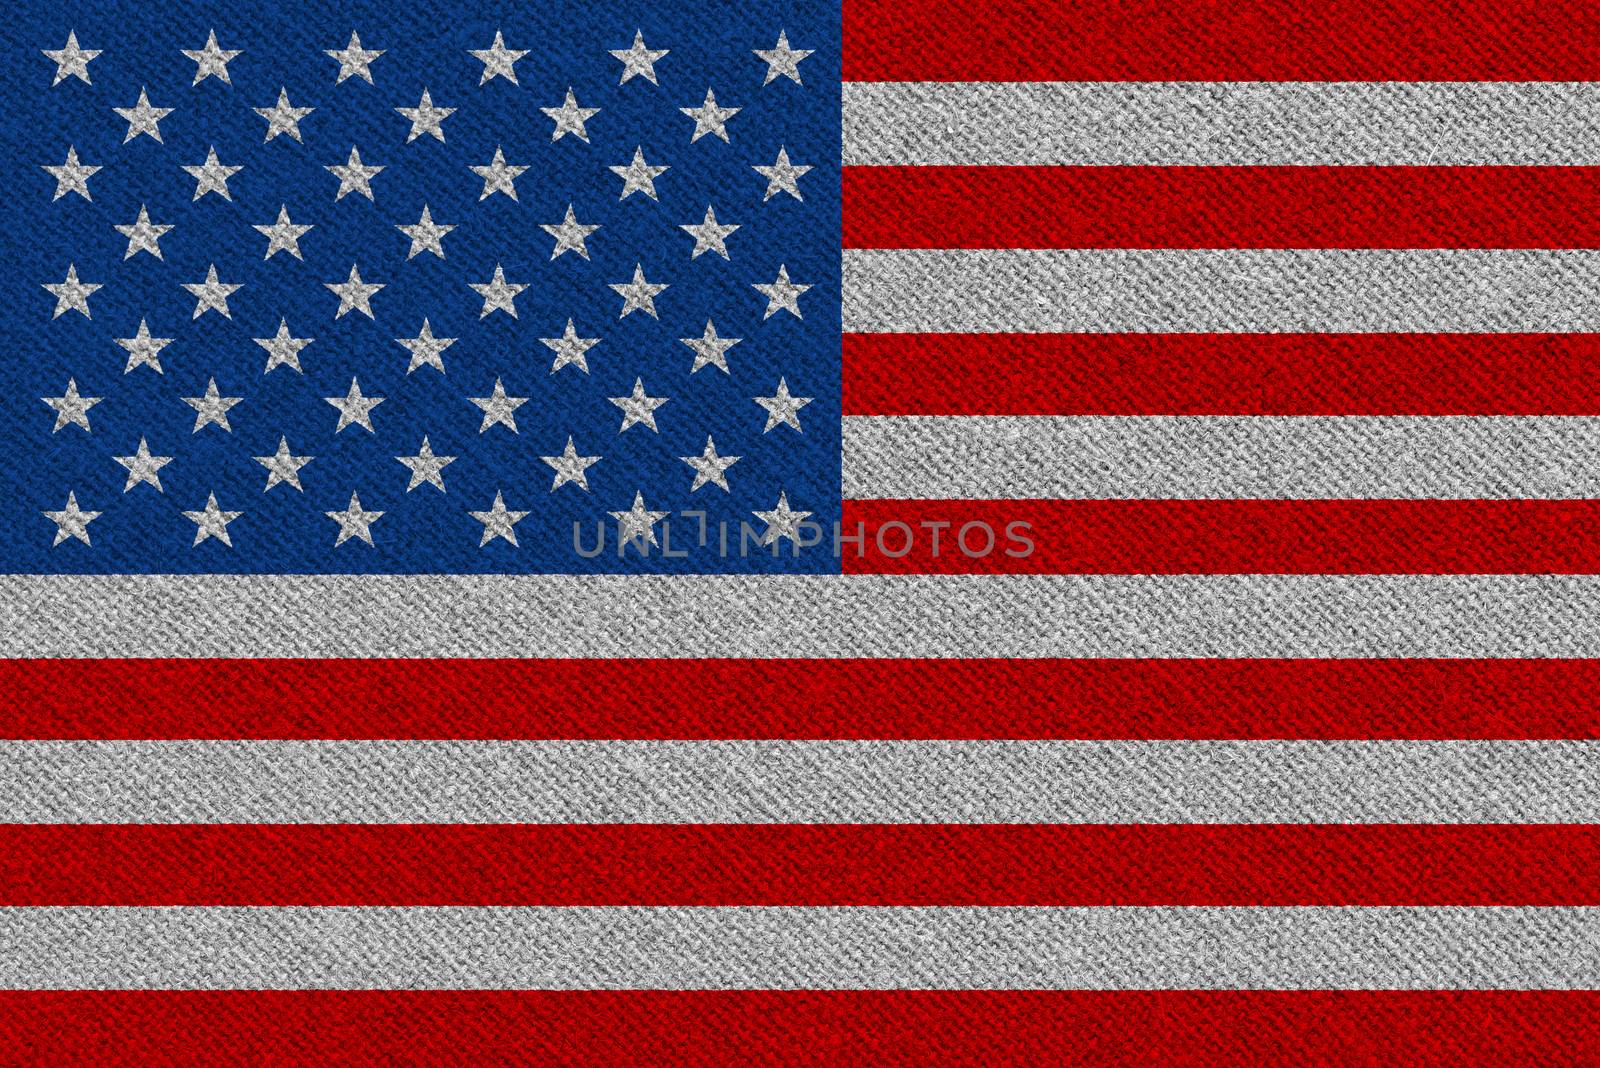 United States of America fabric flag. Patriotic background. National flag of United States of America